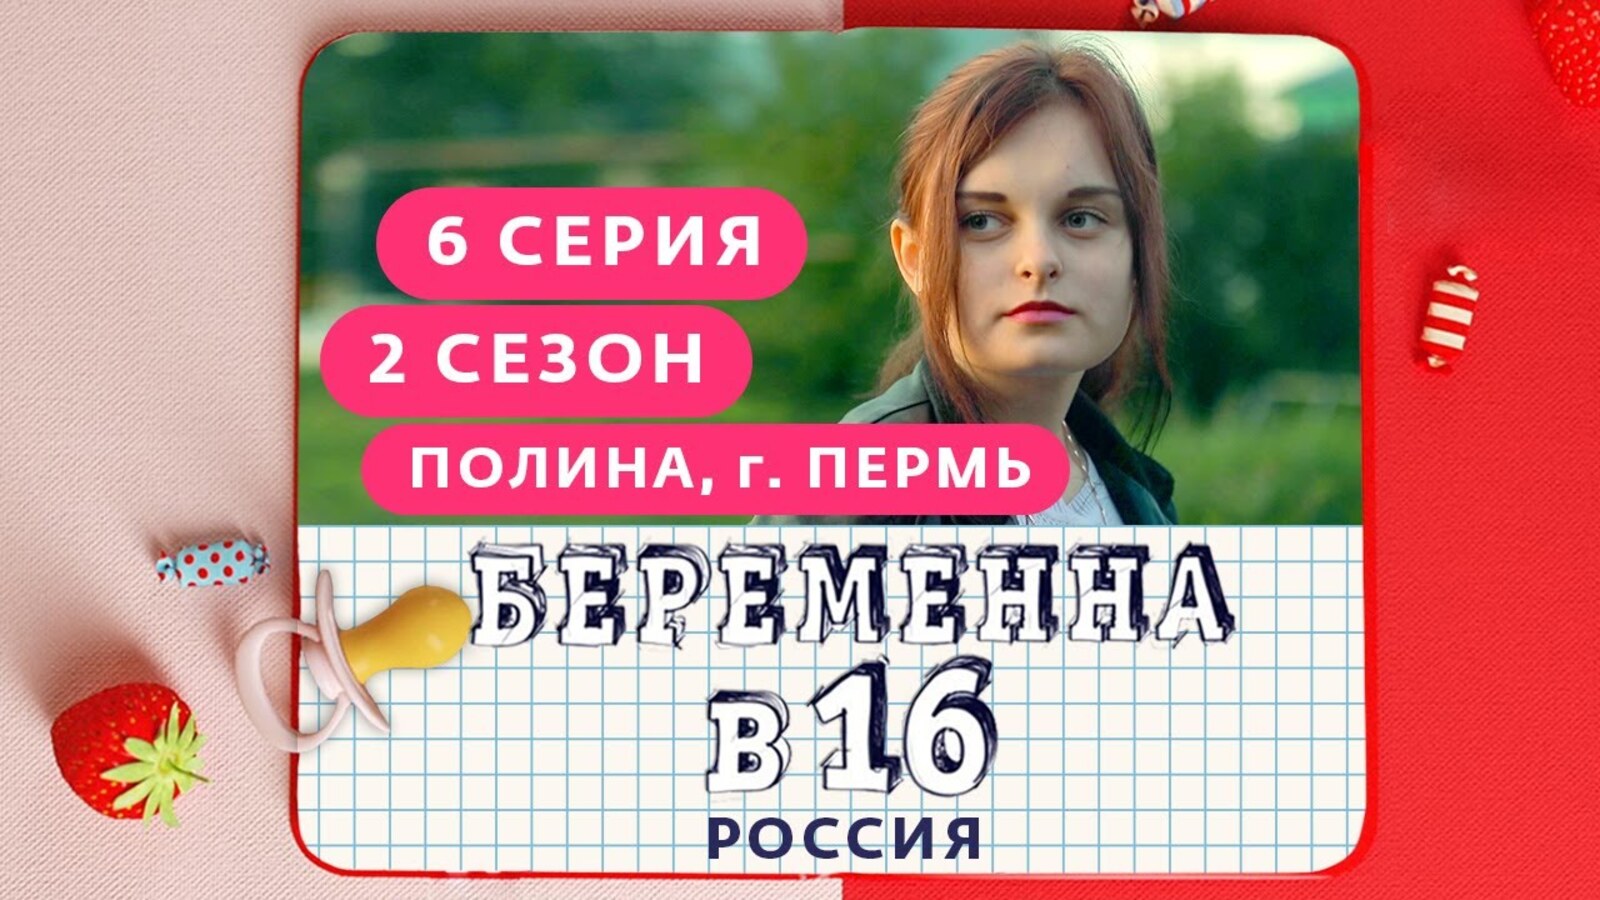 Реалити беременных 16. Беременна в 16 русская версия.